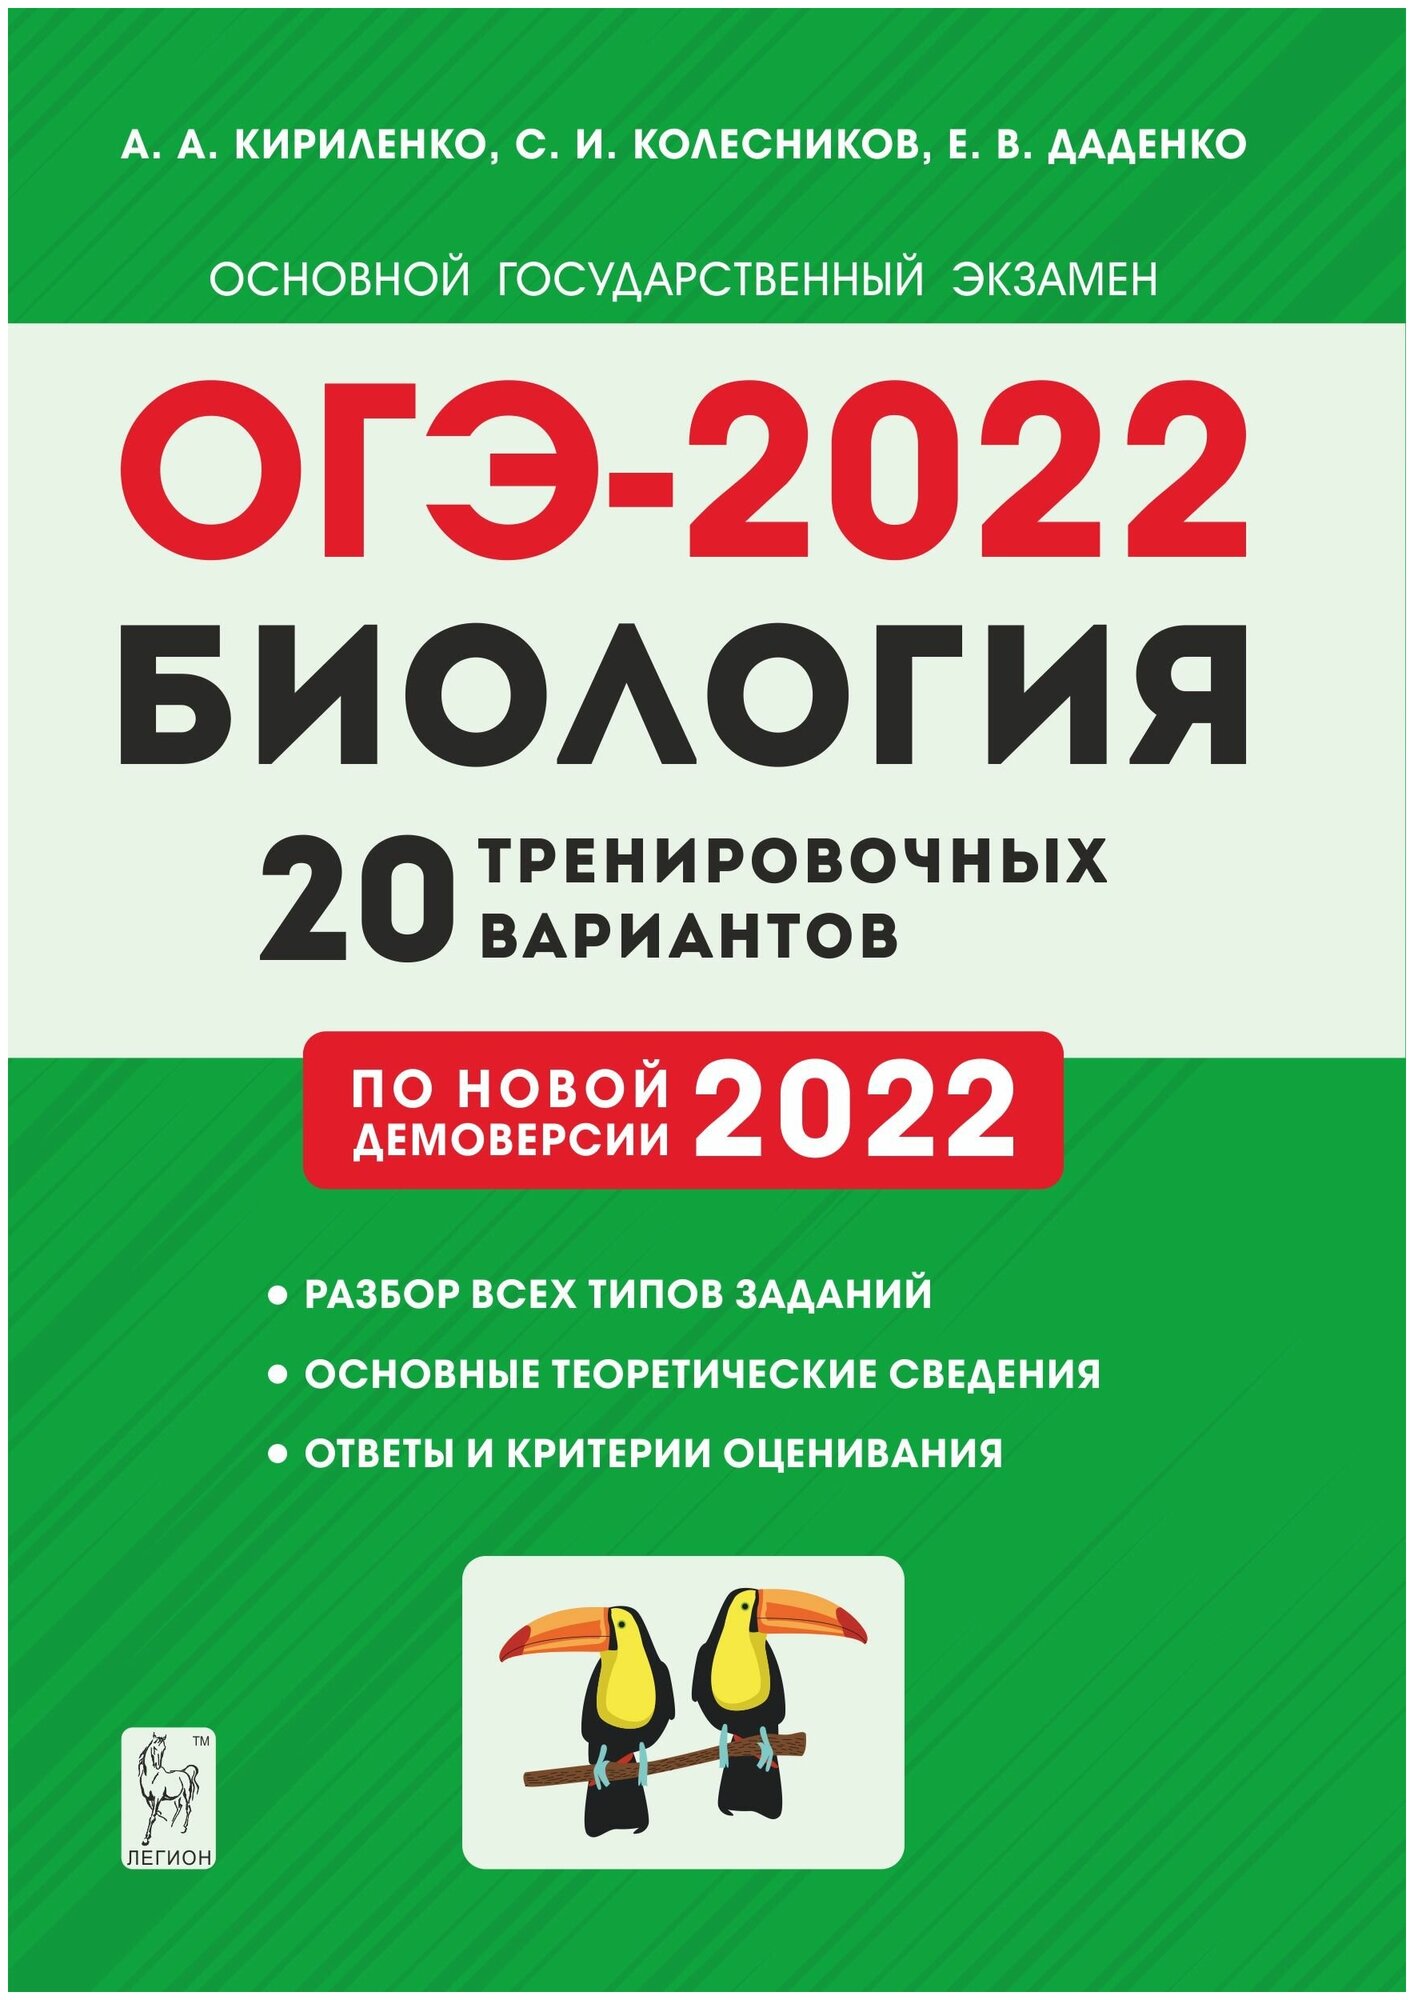 Биология. 9 класс. Подготовка к ОГЭ 2022. 20 тренировочных вариантов по демоверсии 2022 года. Учебно методическое пособие